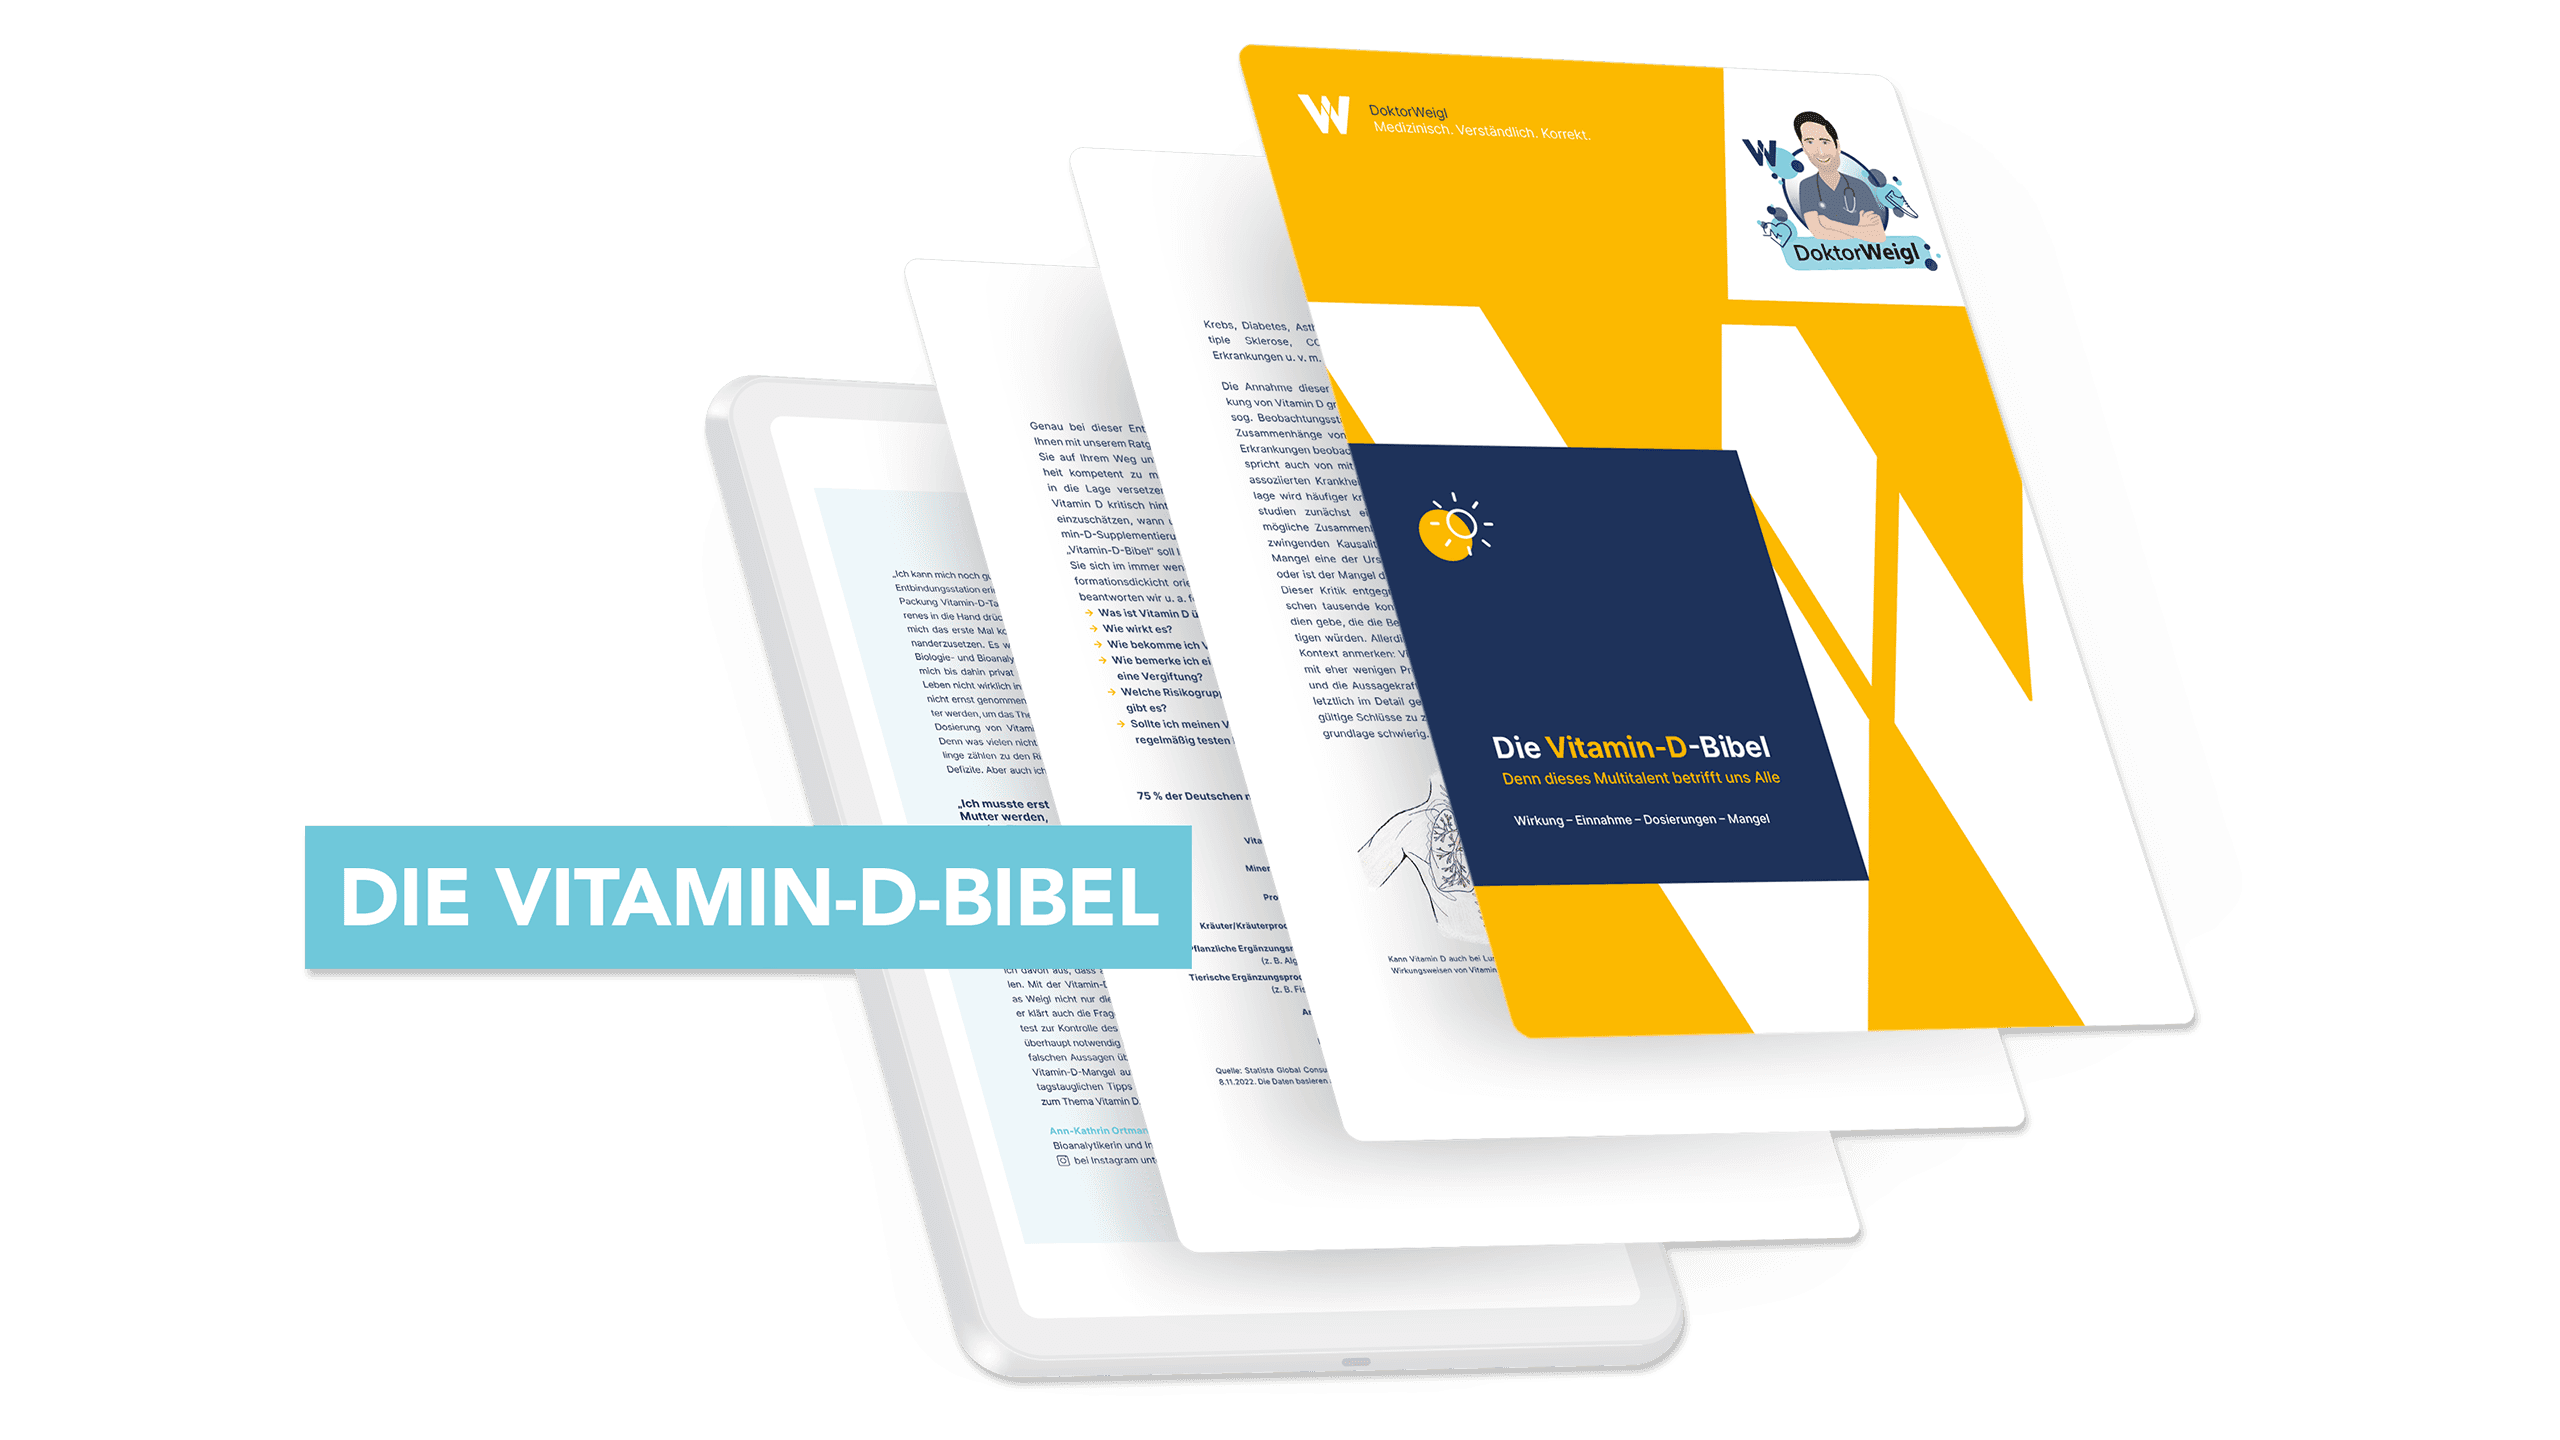 Die Vitamin-D-Bibel